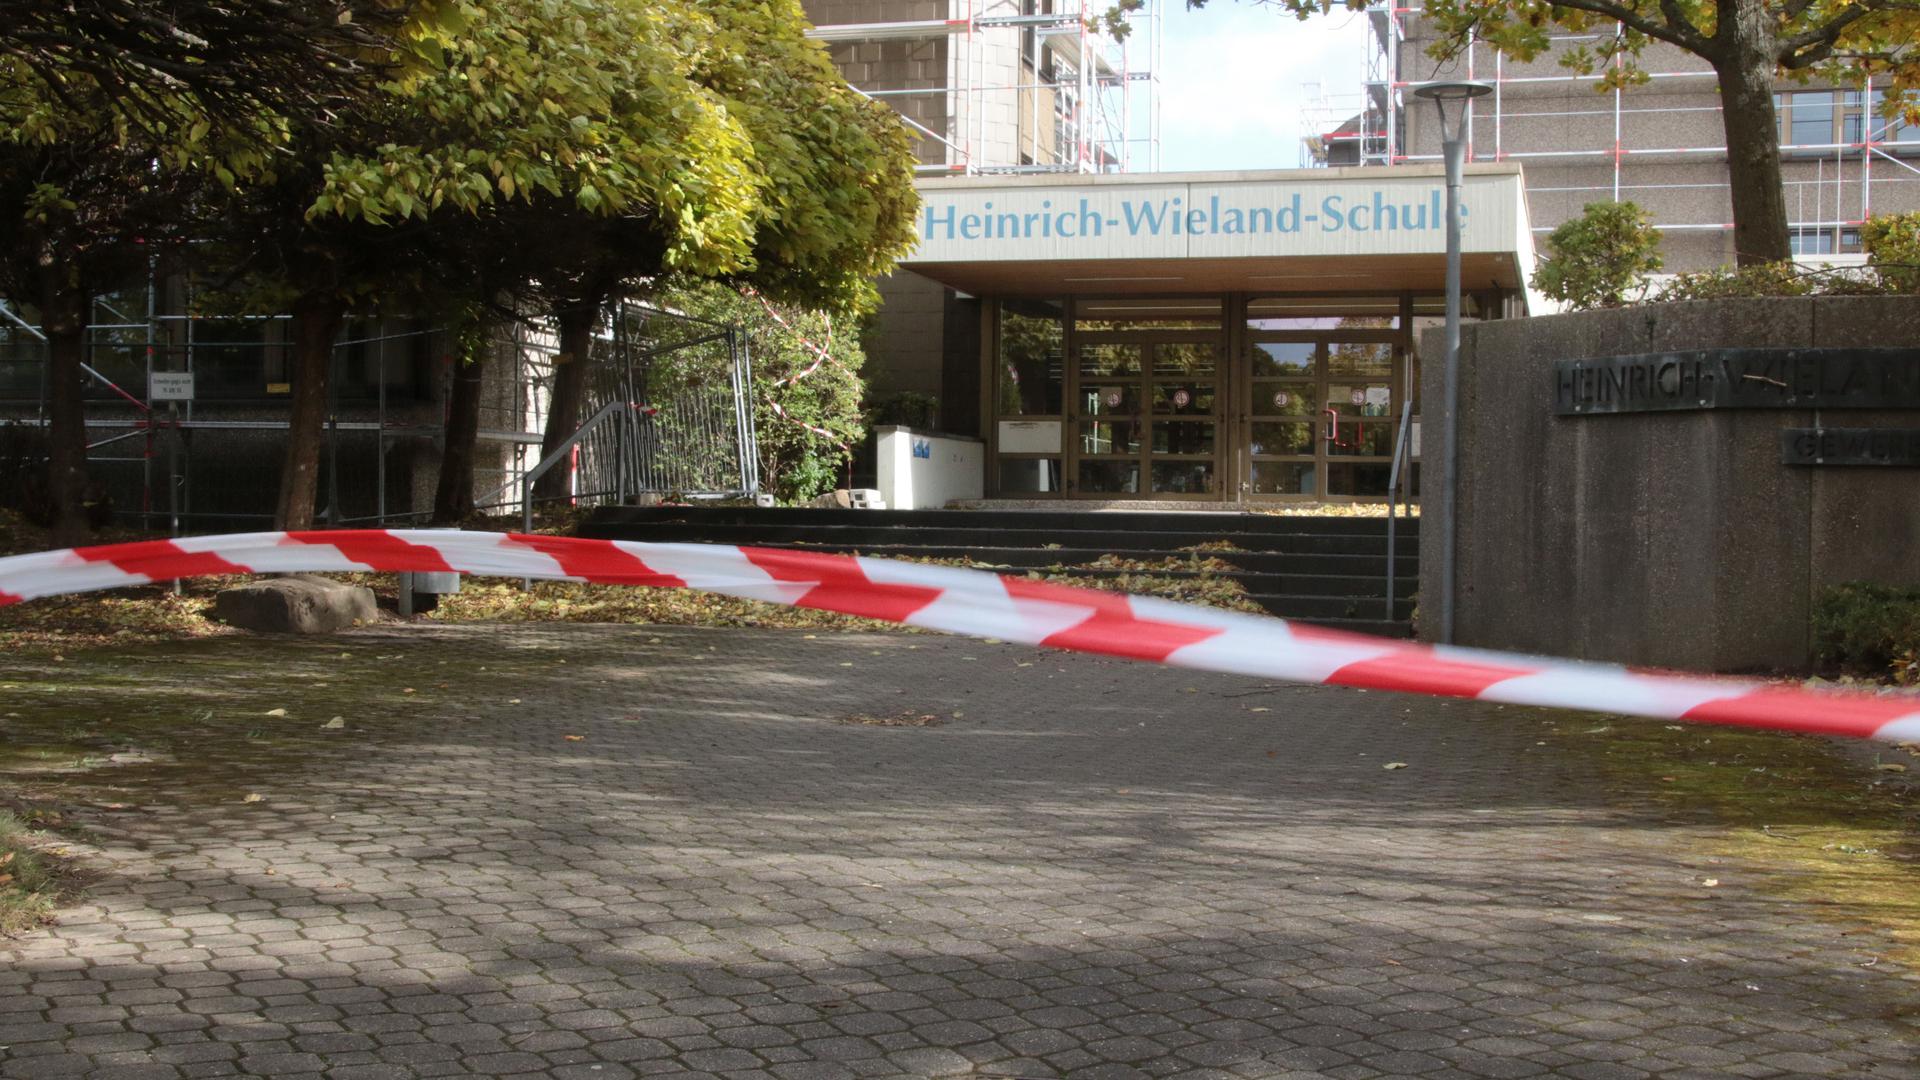 Die Heinrich-Wieland-Schule in Pforzheim ist mit Flatterband abgesperrt. Das Sturmtief hatte ein Baugerüst beschädigt.